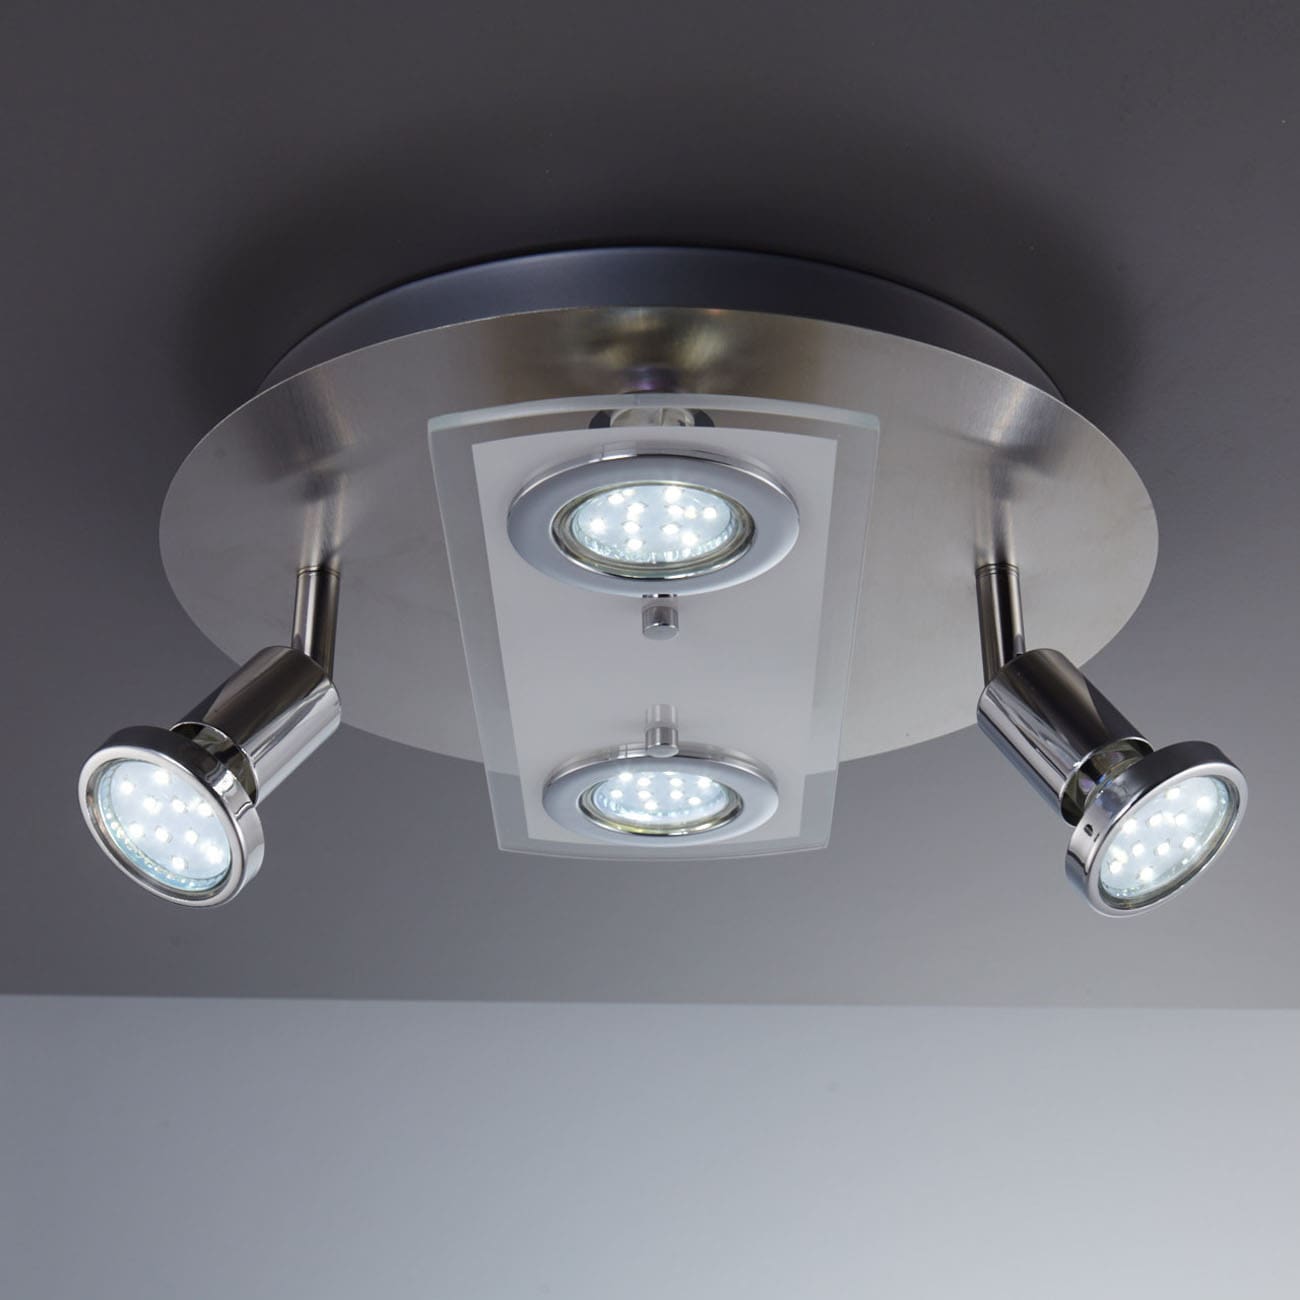 LED Deckenleuchte 29cm - 4-flammig - moderne Deckenlampe 2 Spots schwenkbar Glas Metall GU10 12W 1000lm warmweiß | Matt-Nickel - 5